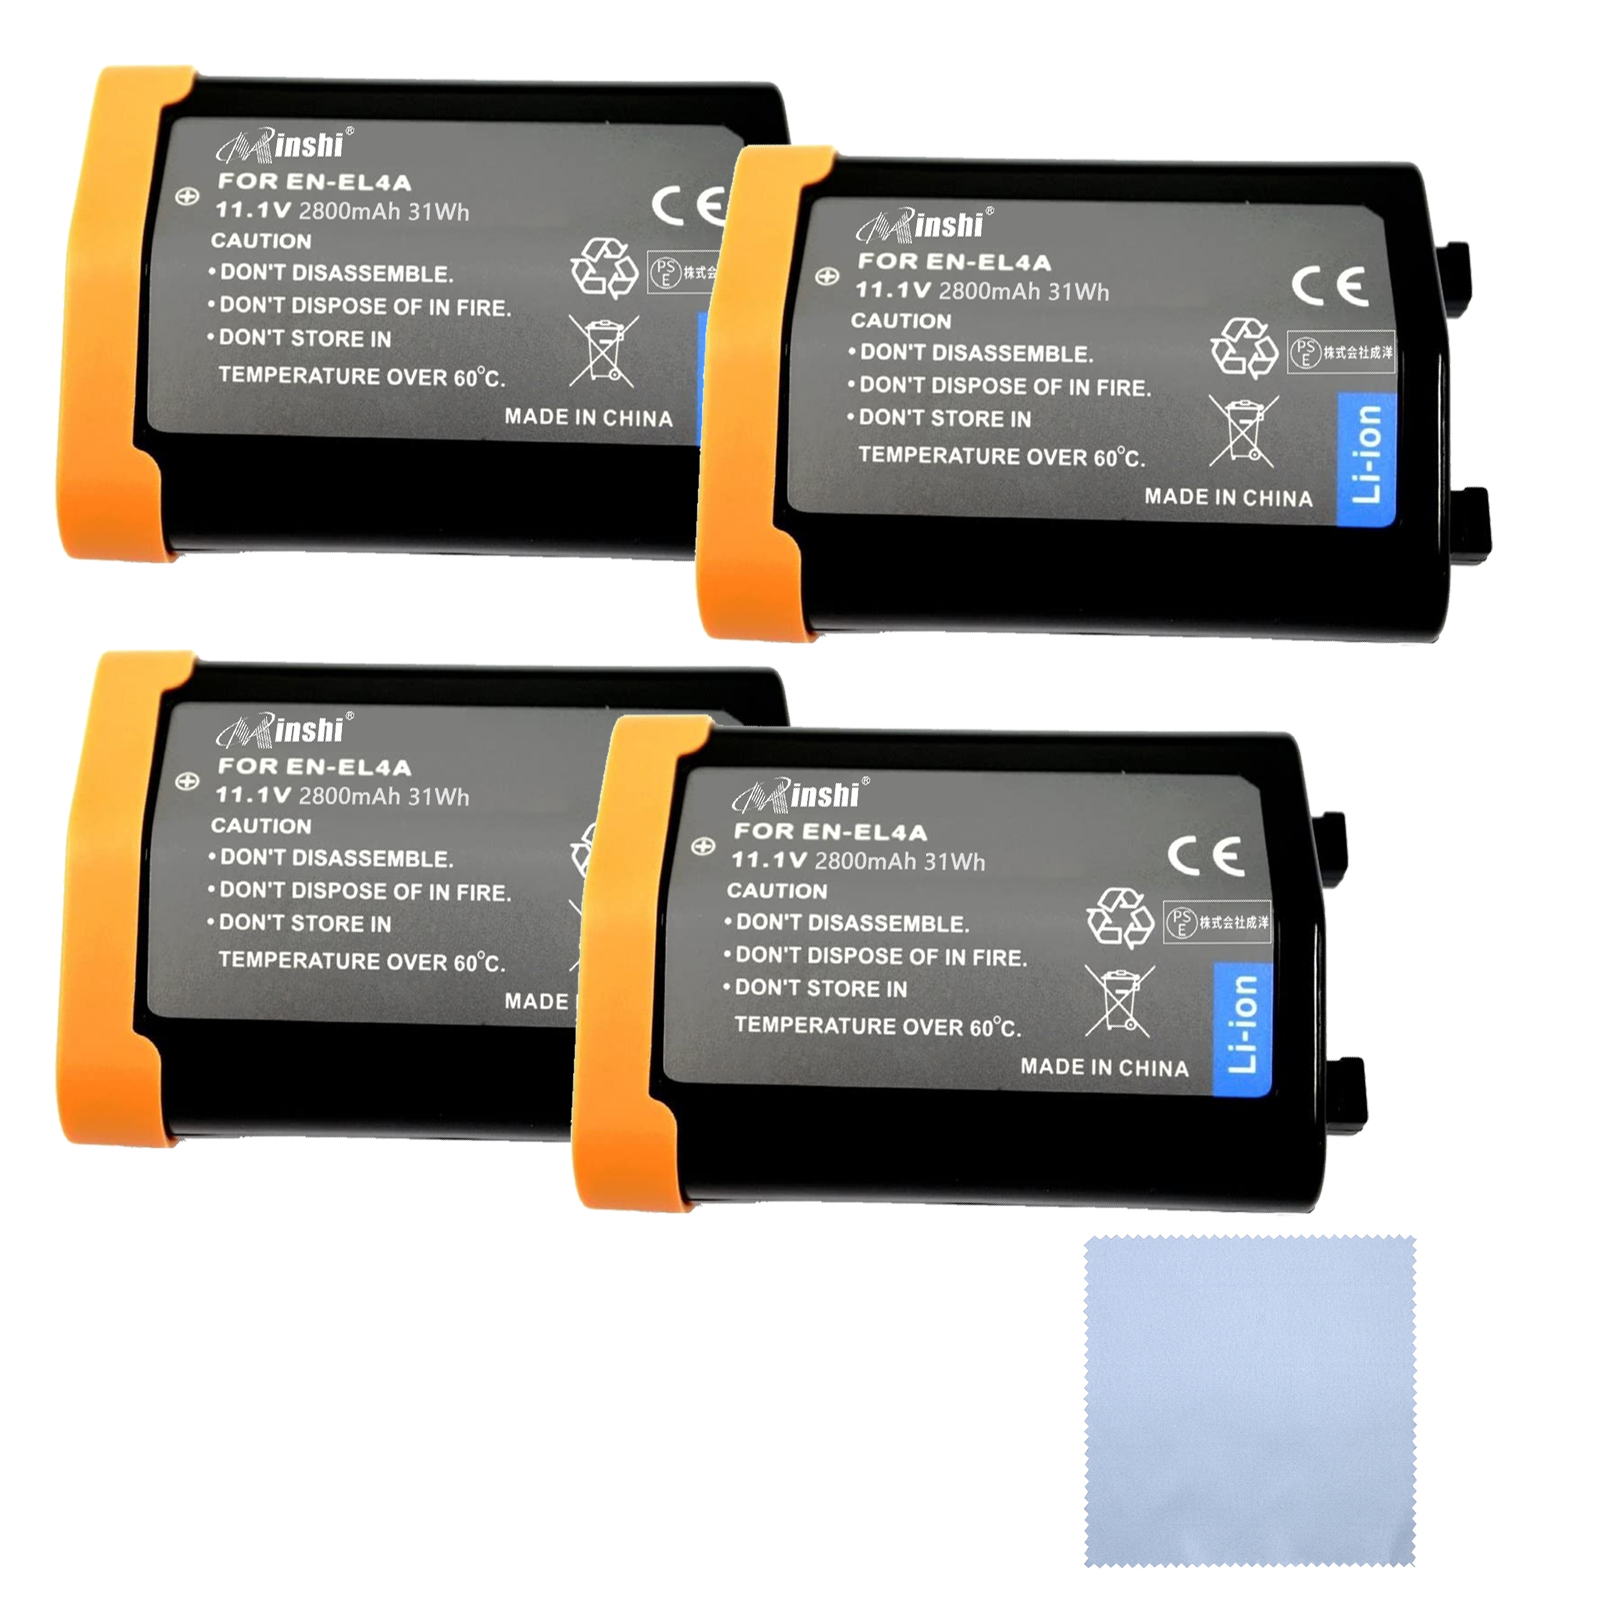 【4個セット&クロス付き】minshi D300【2800mAh 11.1V】PSE認定済 高品質  EN-EL4A互換バッテリー